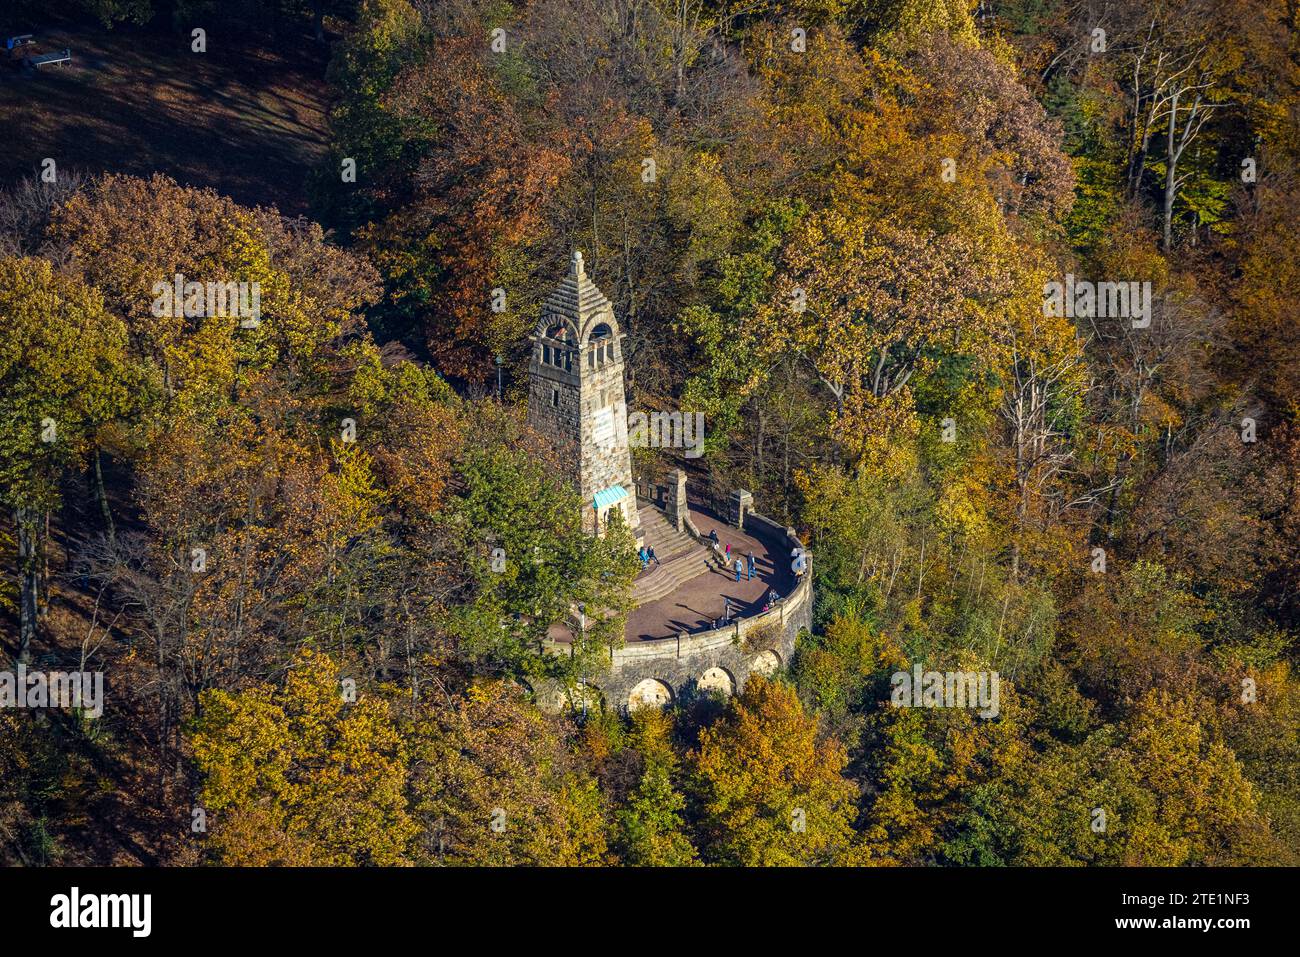 Vue aérienne, zone de loisirs locale Hohenstein, visiteurs au monument de montagne dans la forêt d'automne avec des arbres à feuilles caduques aux couleurs vives de l'automne, Banque D'Images